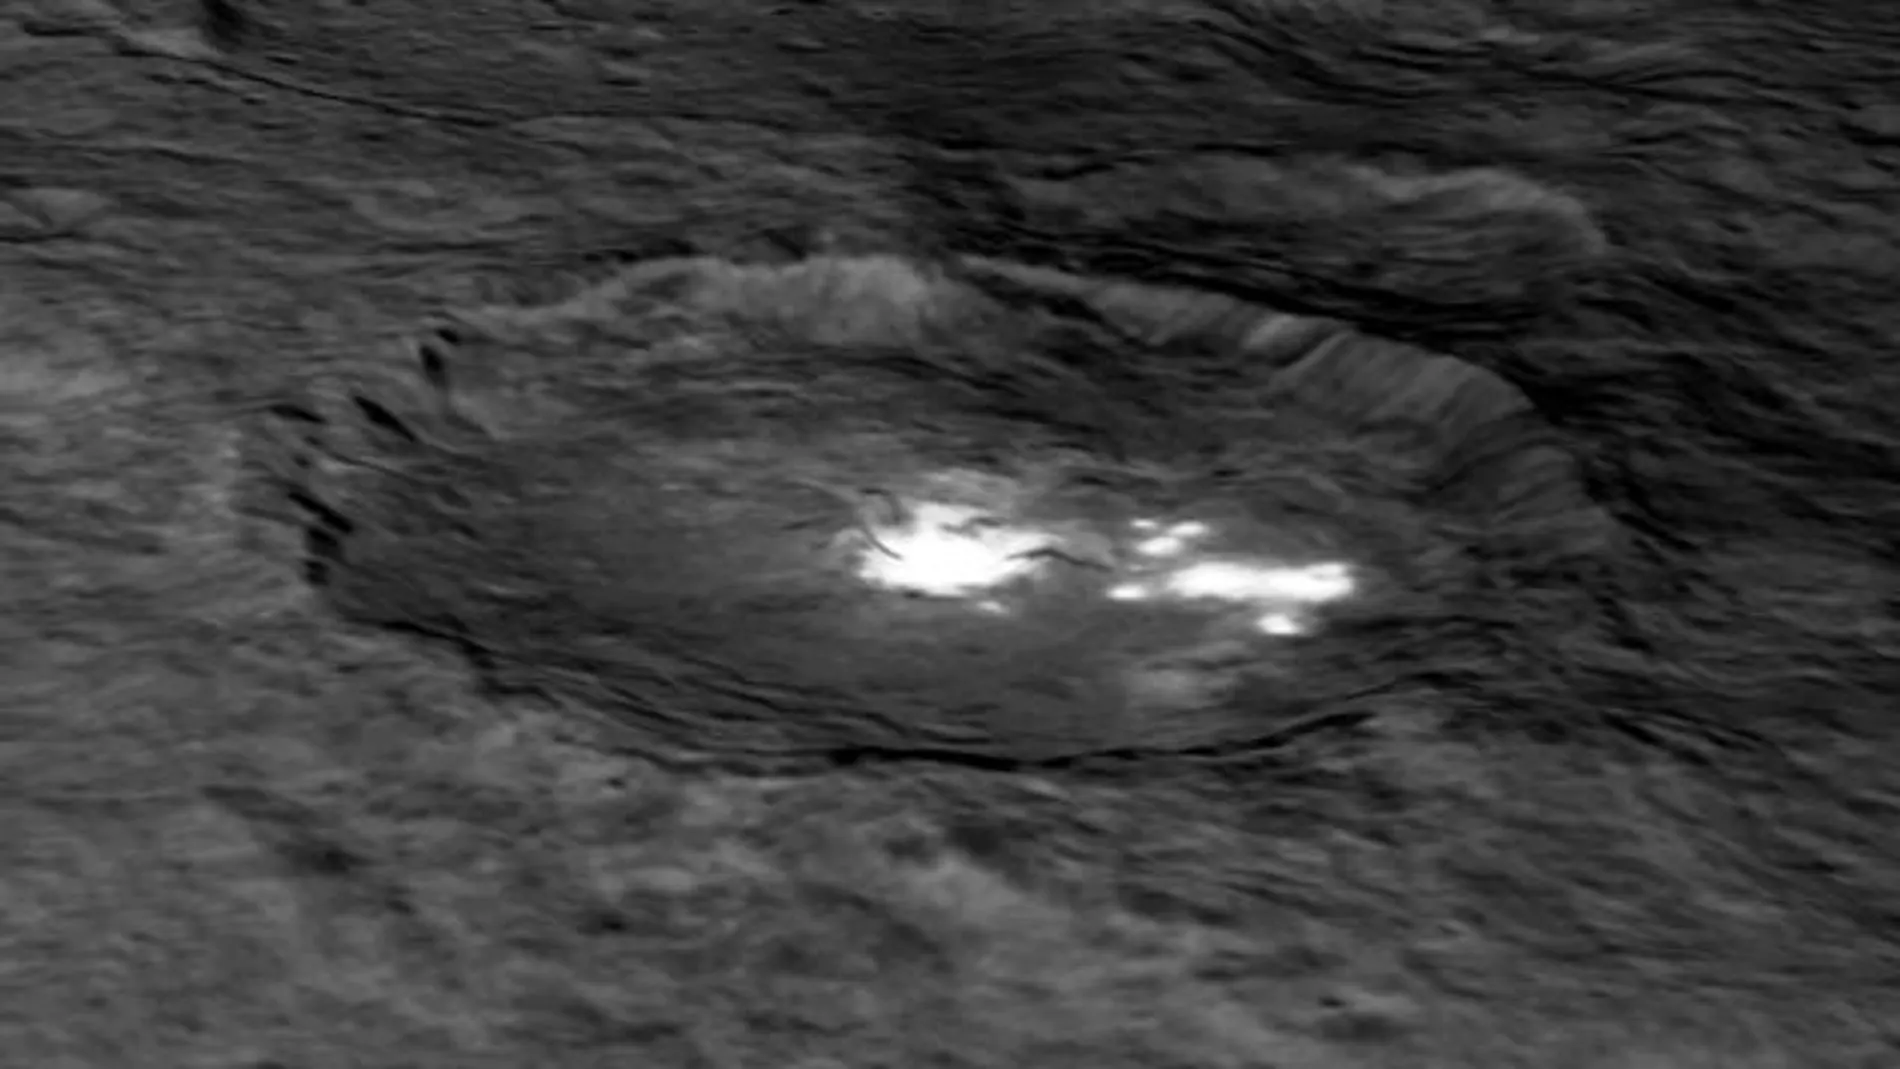 Cráter Occator de Ceres, donde se observan varios puntos brillantes y otro cráter interior de unos diez kilómetros de diámetro y medio kilómetro de profundidad